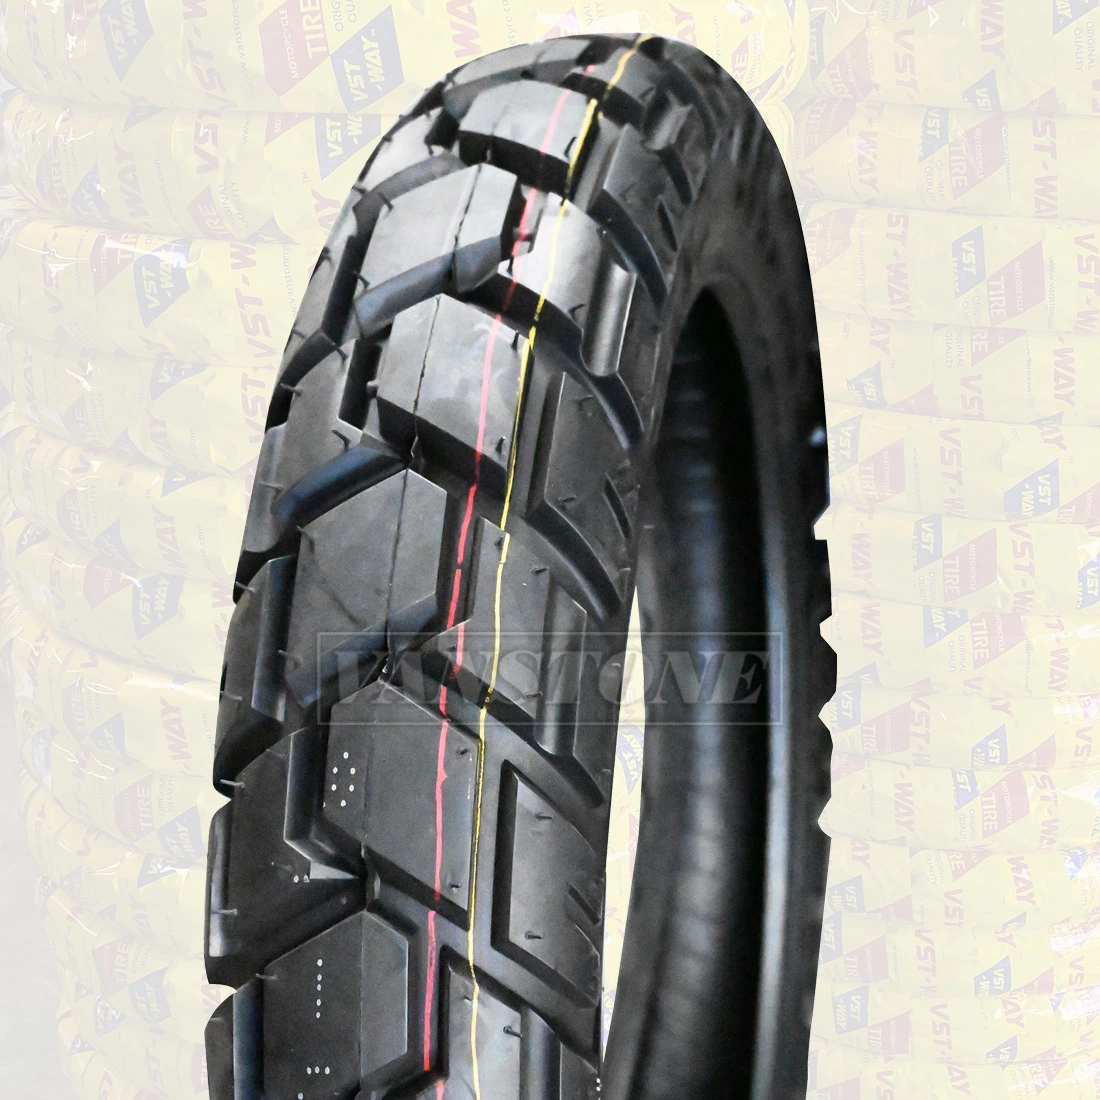 Melhor qualidade de OEM Vstway off road 4.10-18 Tubeless pneus de borracha de pneus de Moto